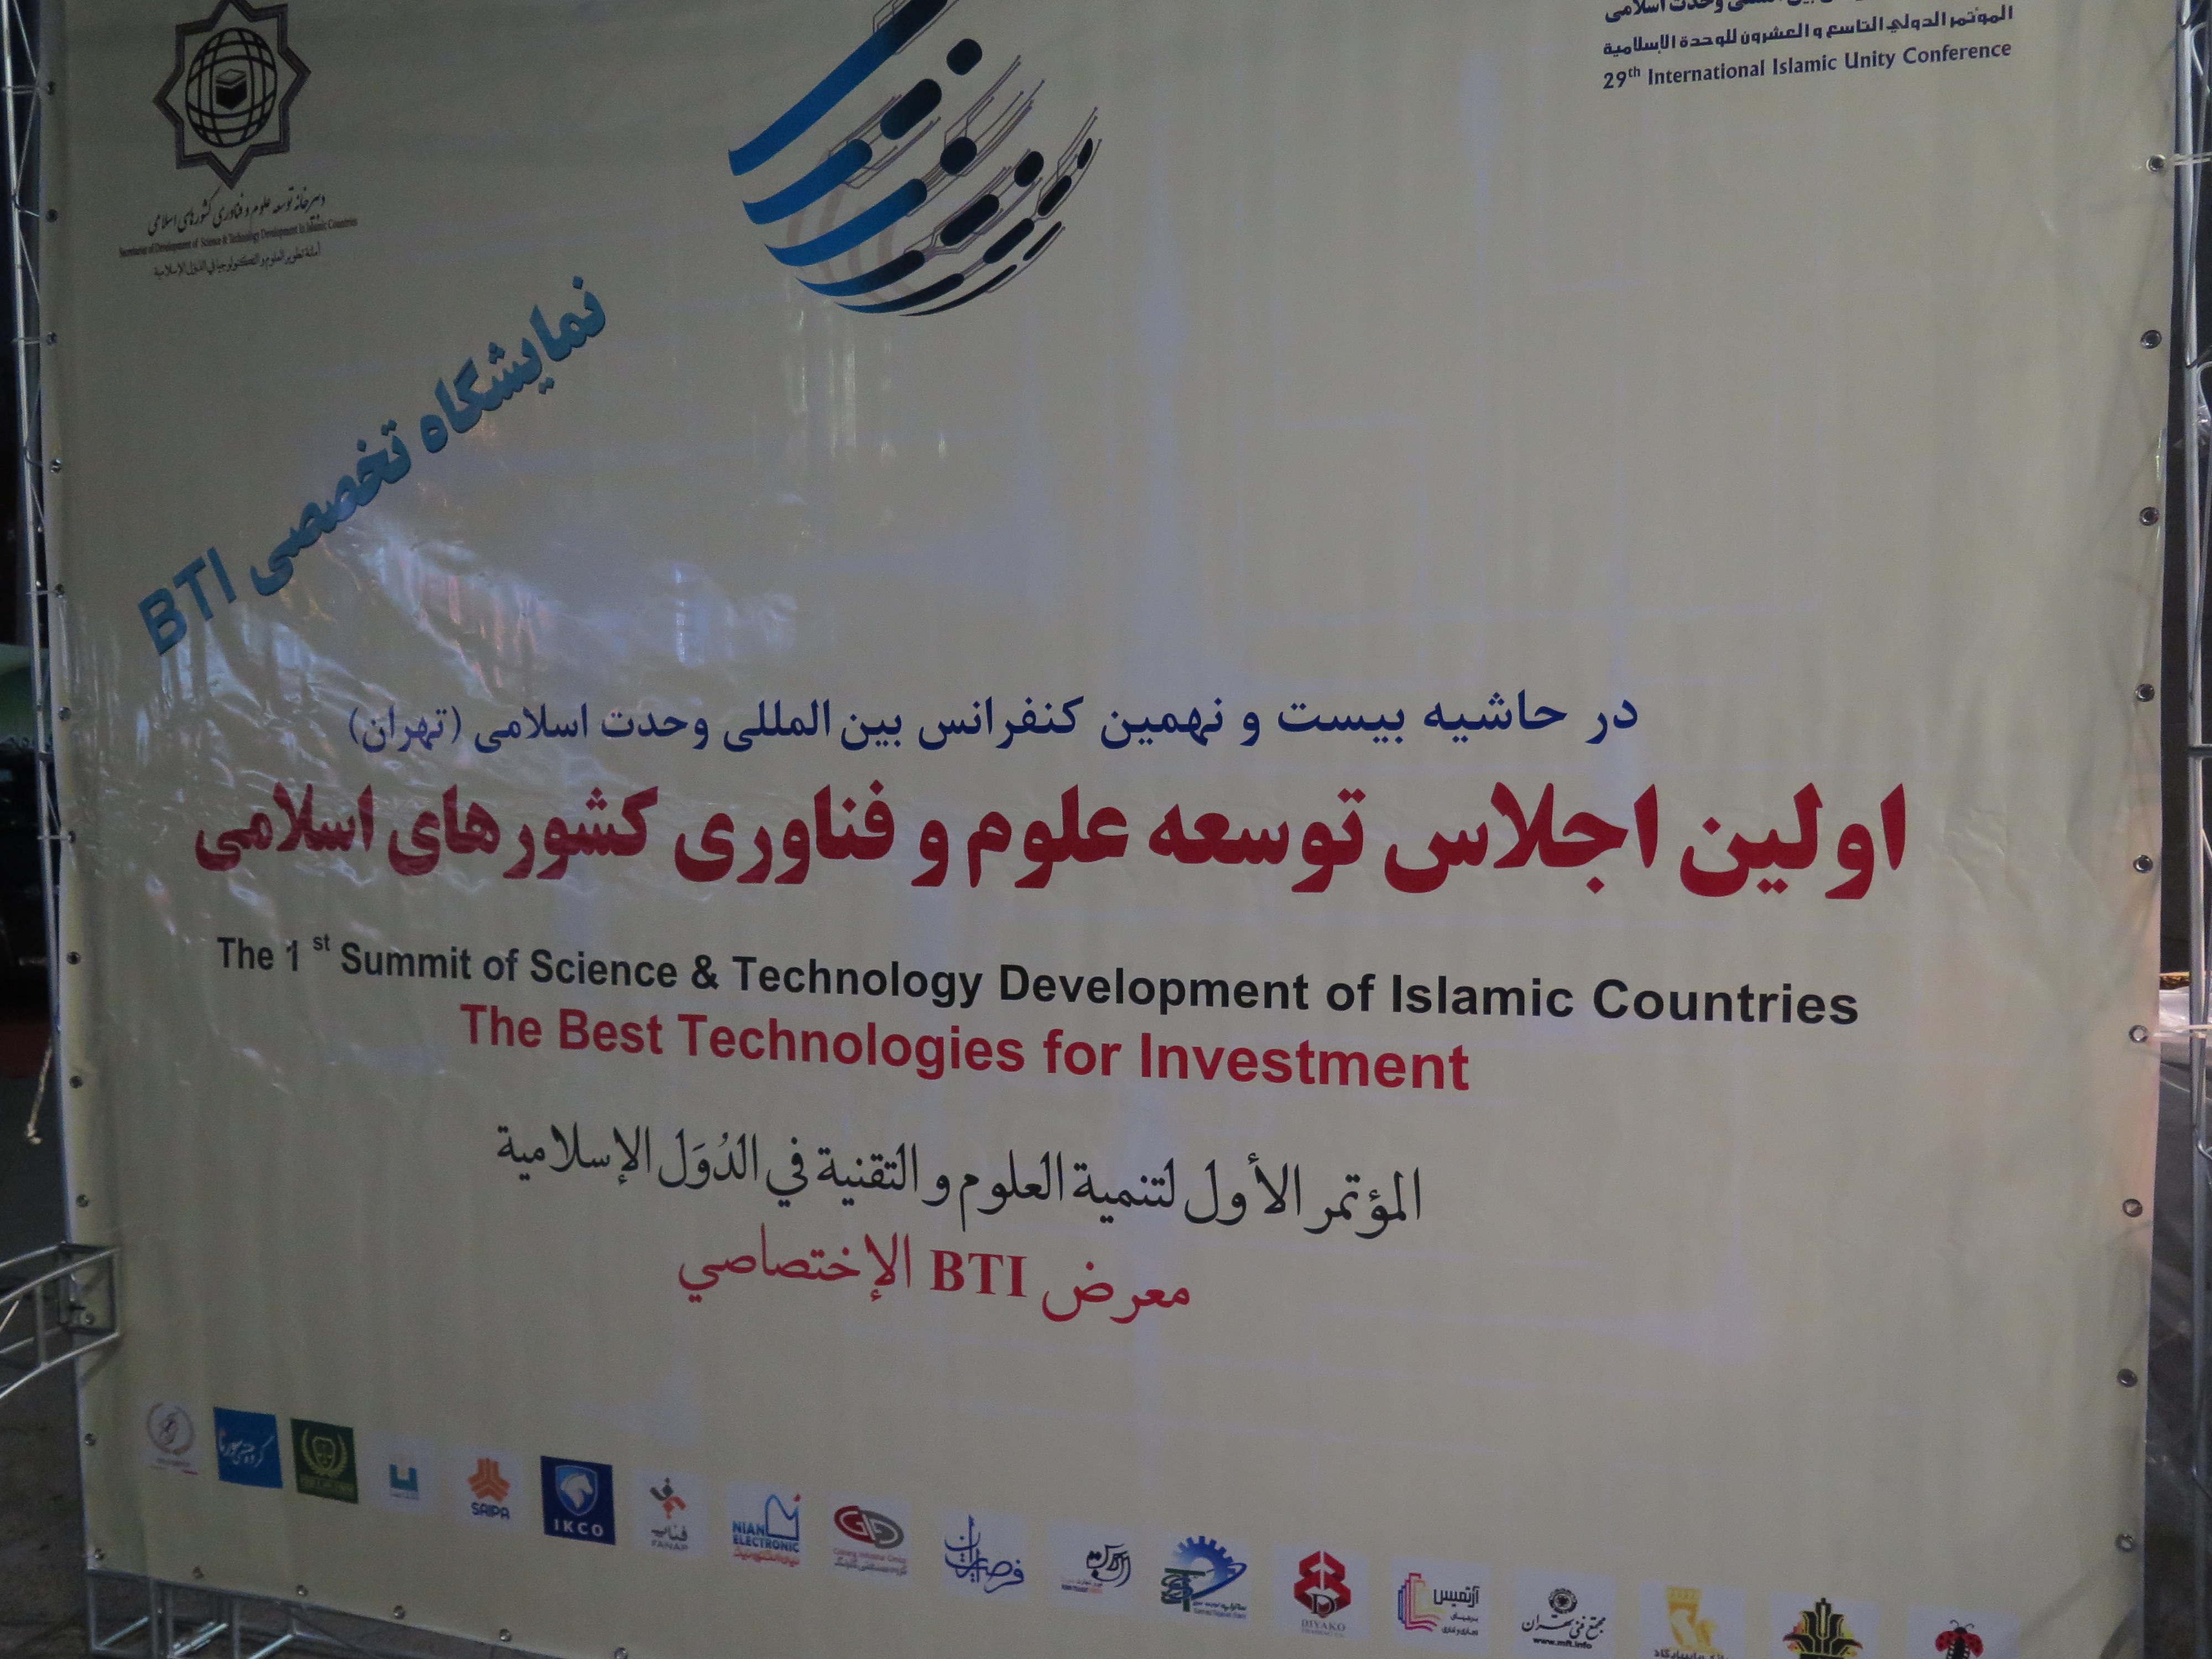 اولین اجلاس توسعه علوم و فناوری کشورهای اسلامی همزمان با گرامیداشت هفته وحدت از ششم تا هشتم دی ماه به میزبانی جمهوری اسلامی ایران برگزار شد.